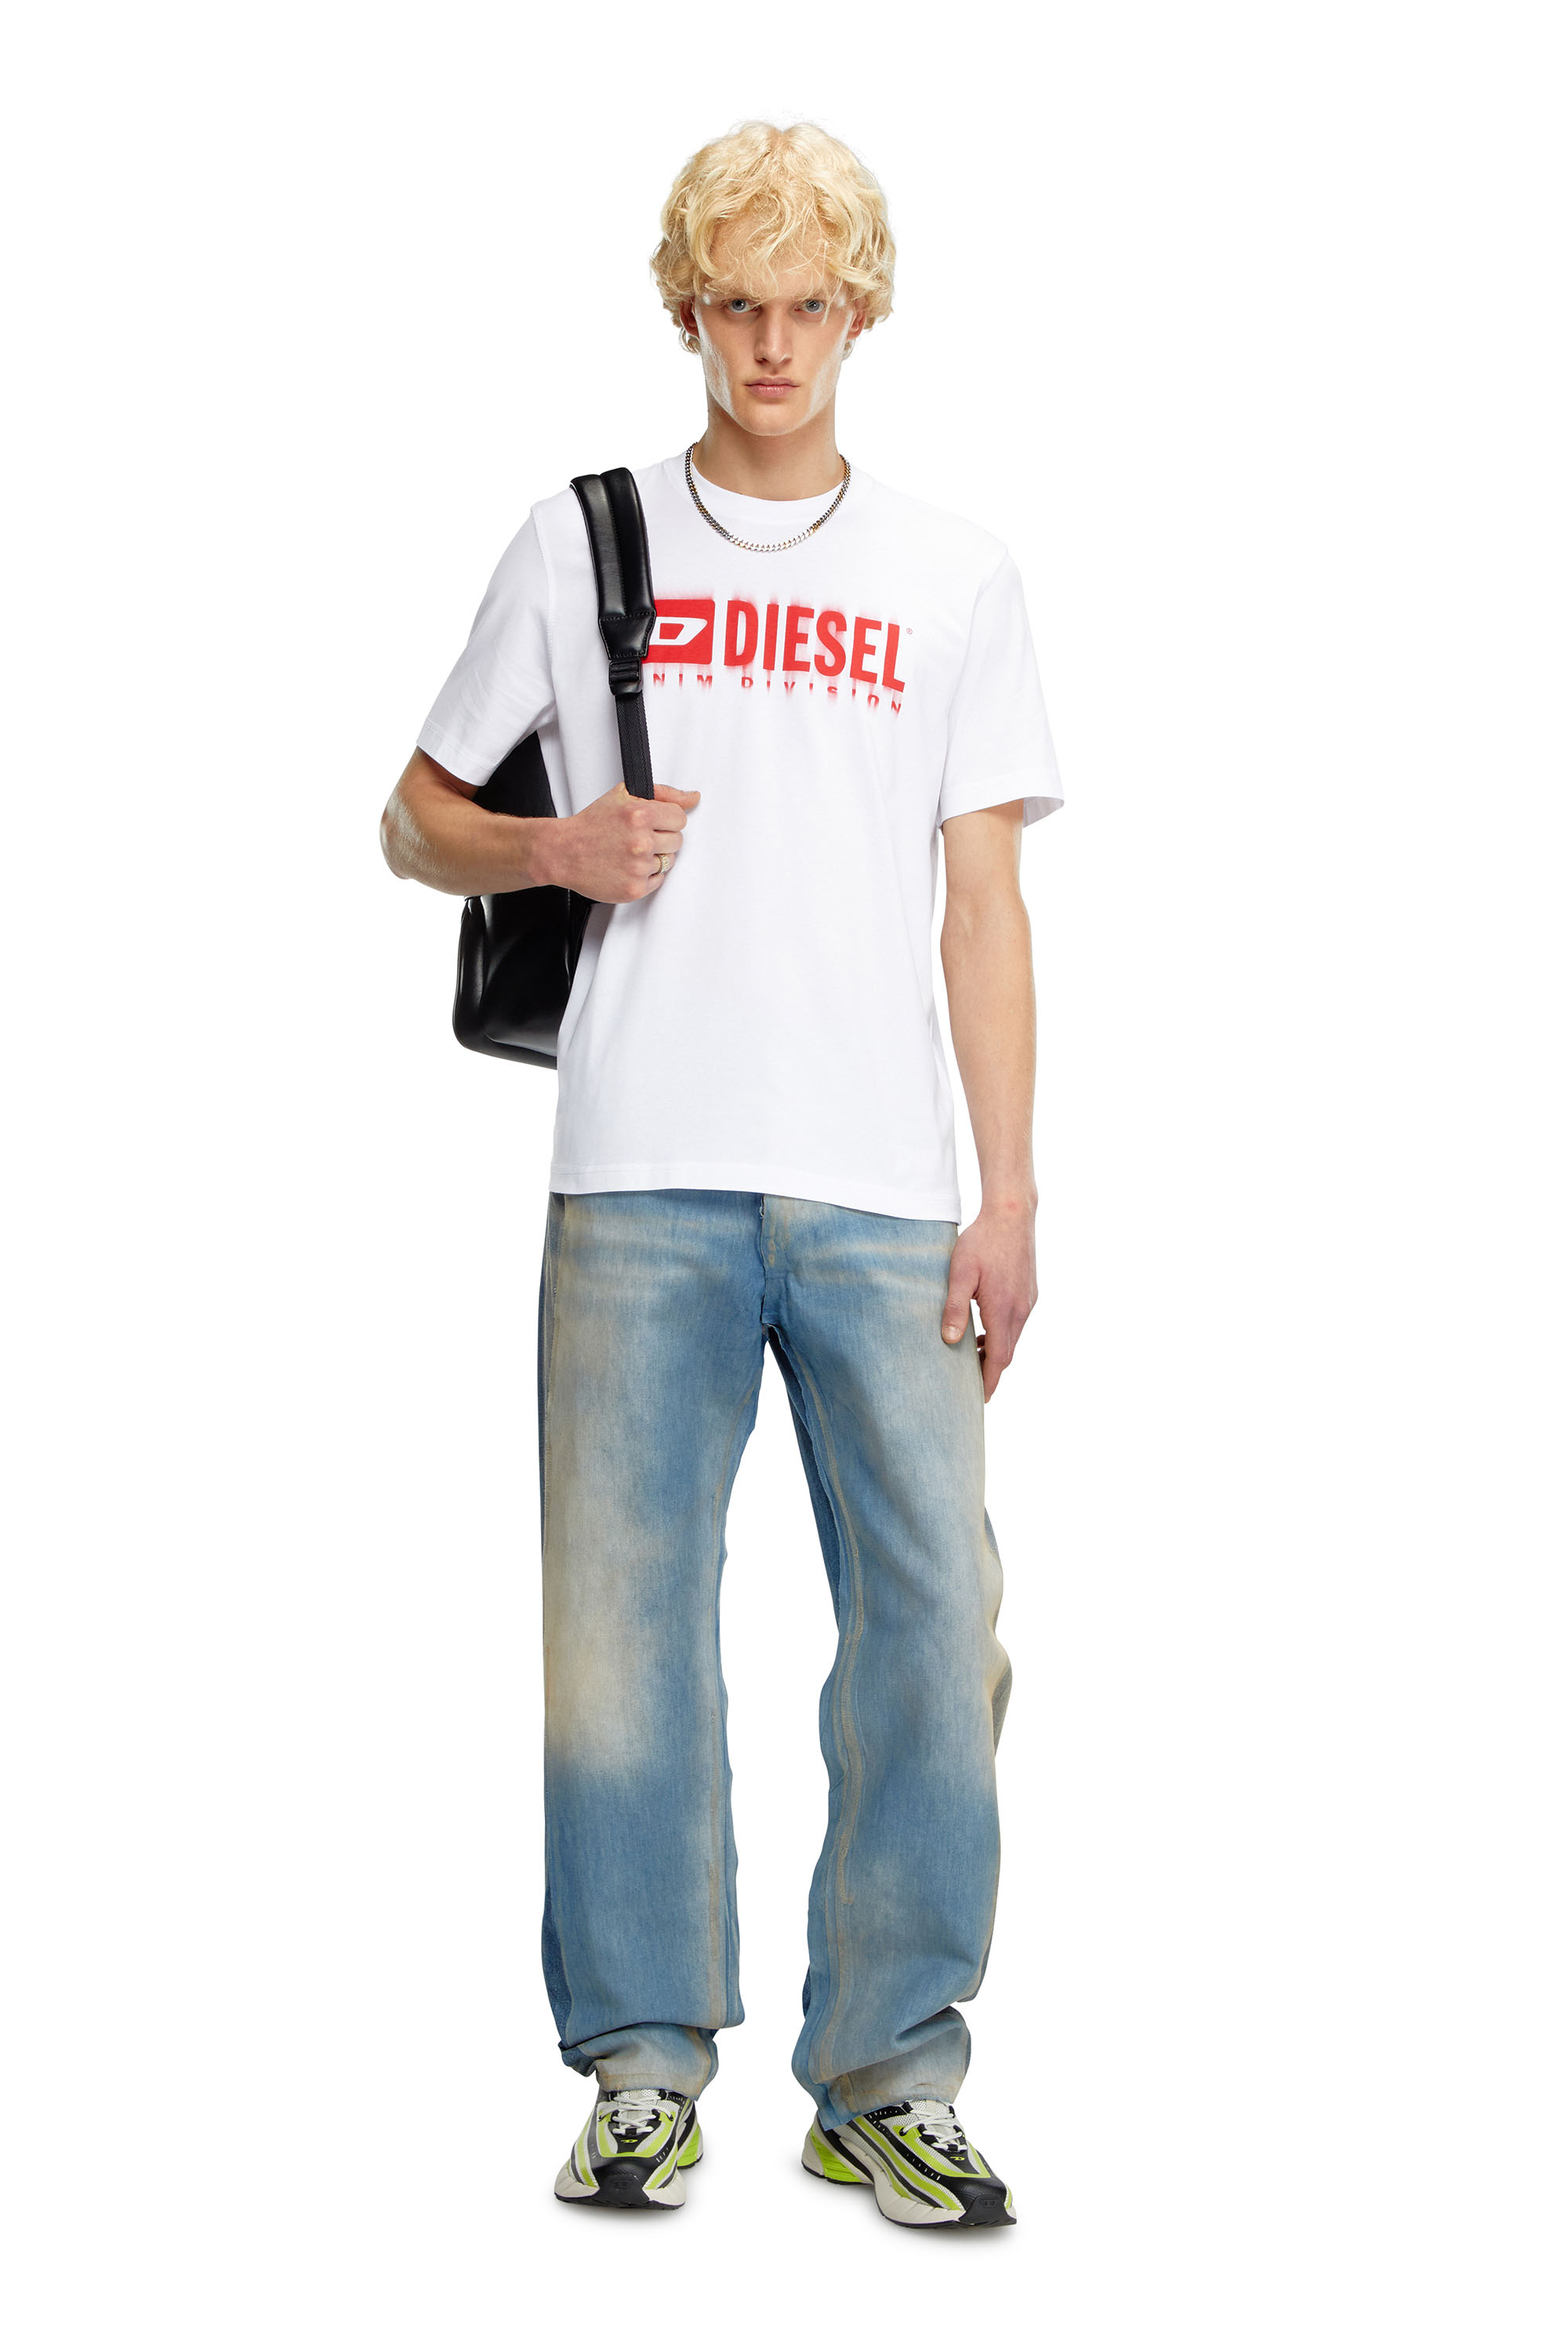 Diesel - T-ADJUST-Q7, Man T-shirt with blurry Diesel logo in White - Image 2